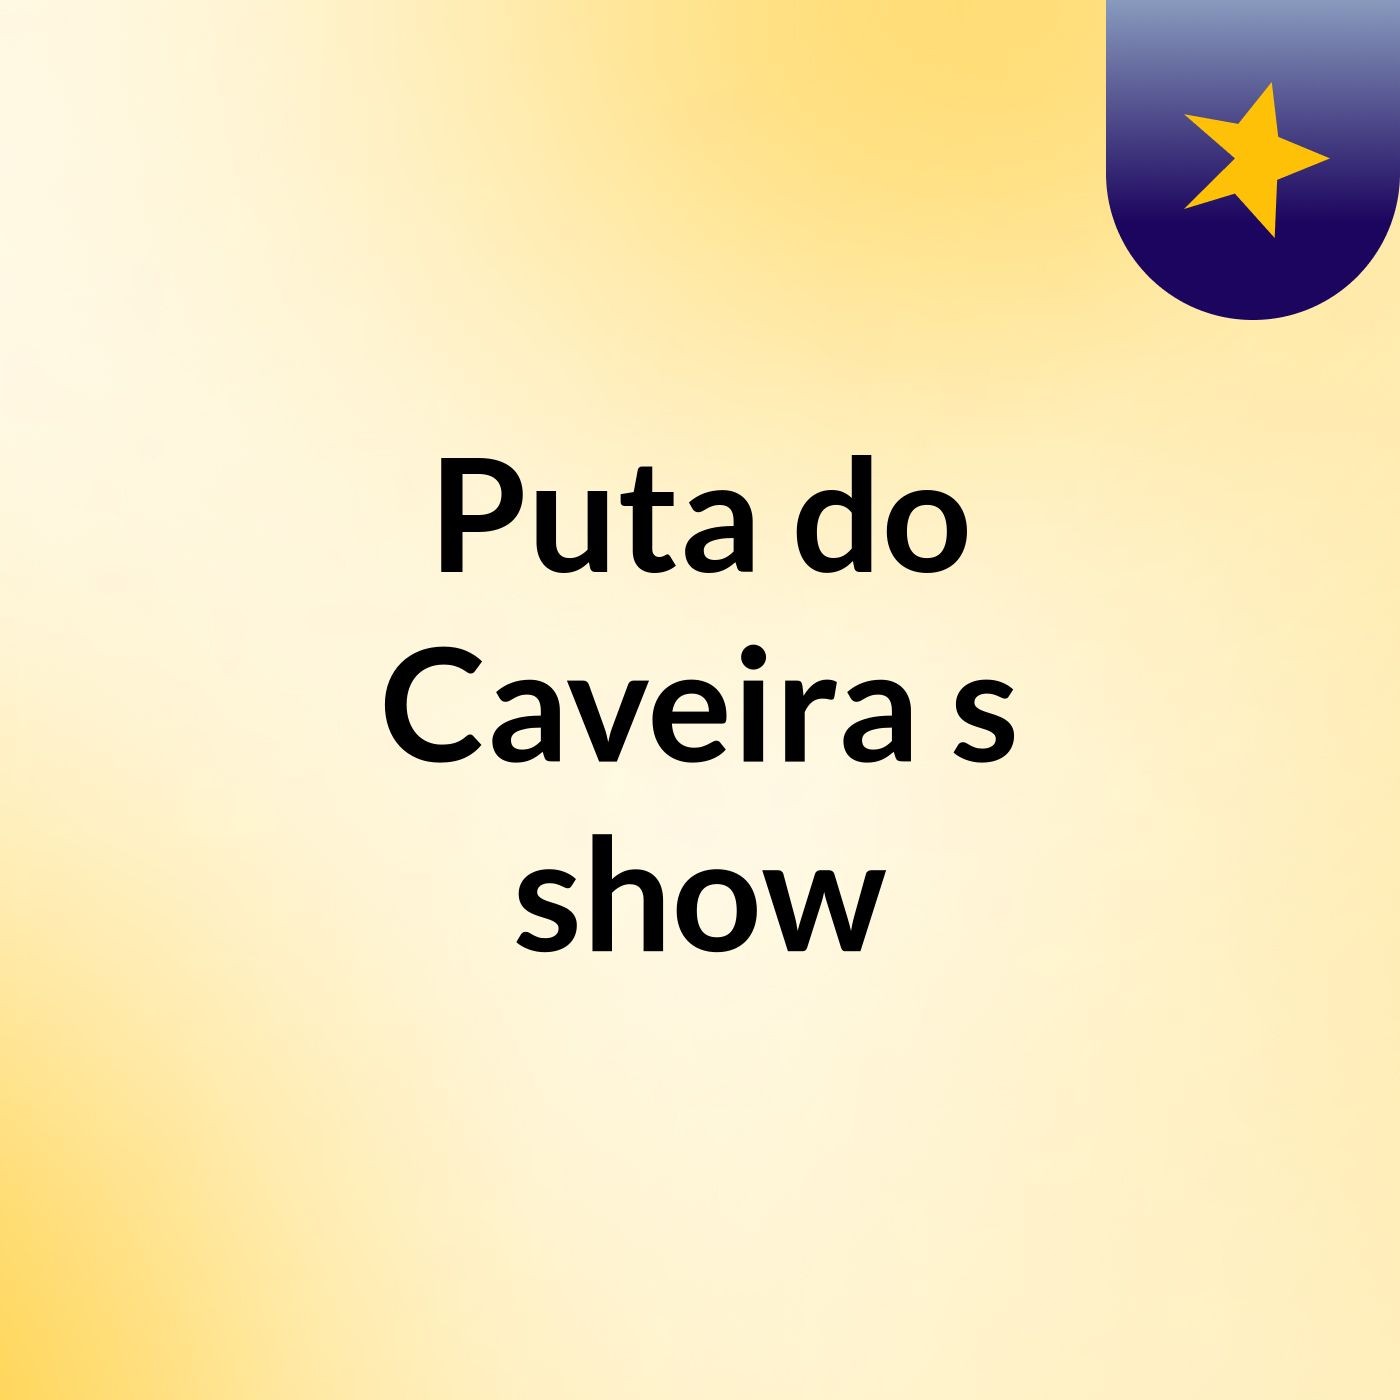 Puta do Caveira's show